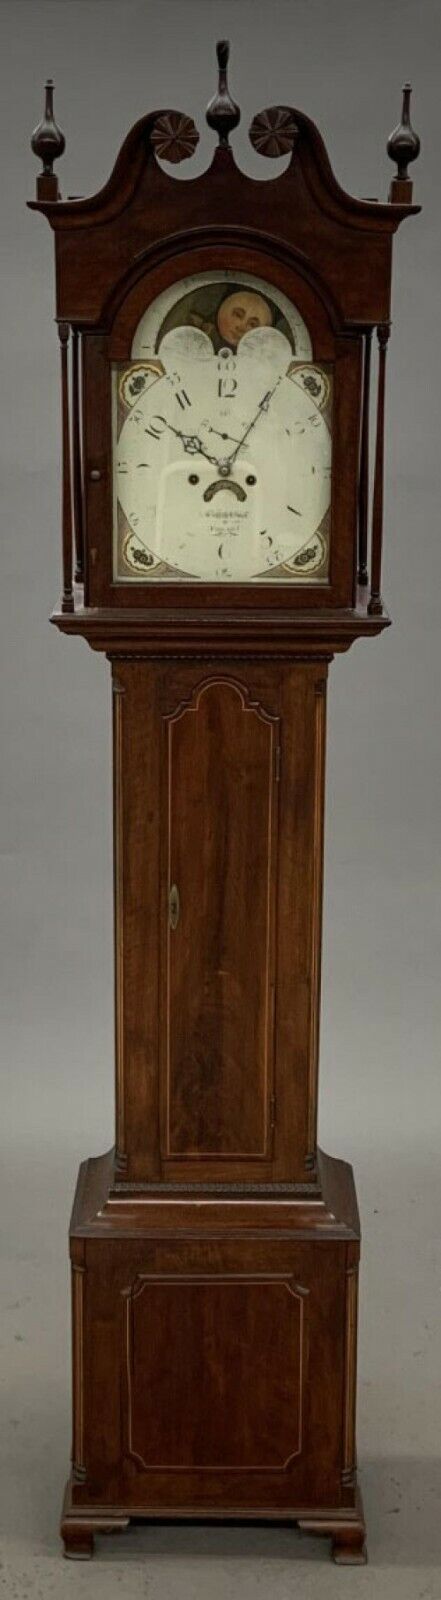 Rare GRIFFITH OWEN Philadelphia Tall Case Grandfather Clock circa 1790